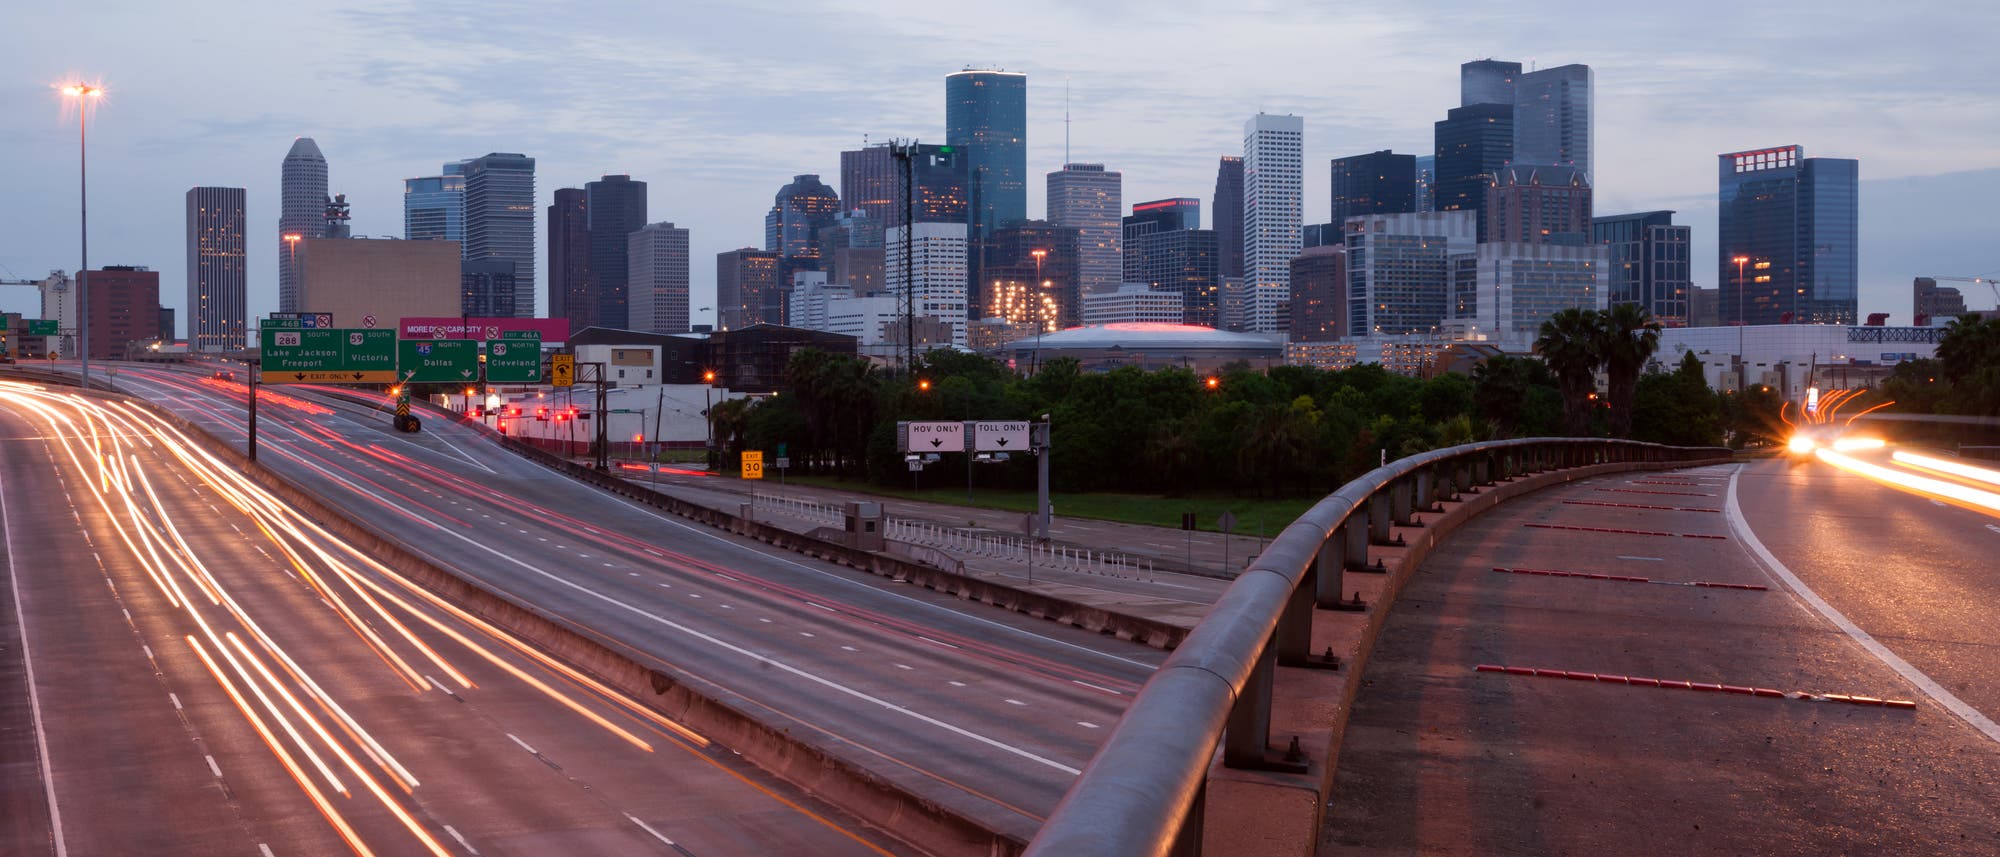 Im Vordergrund Freeways, im Hintergrund die Skyline von Houston